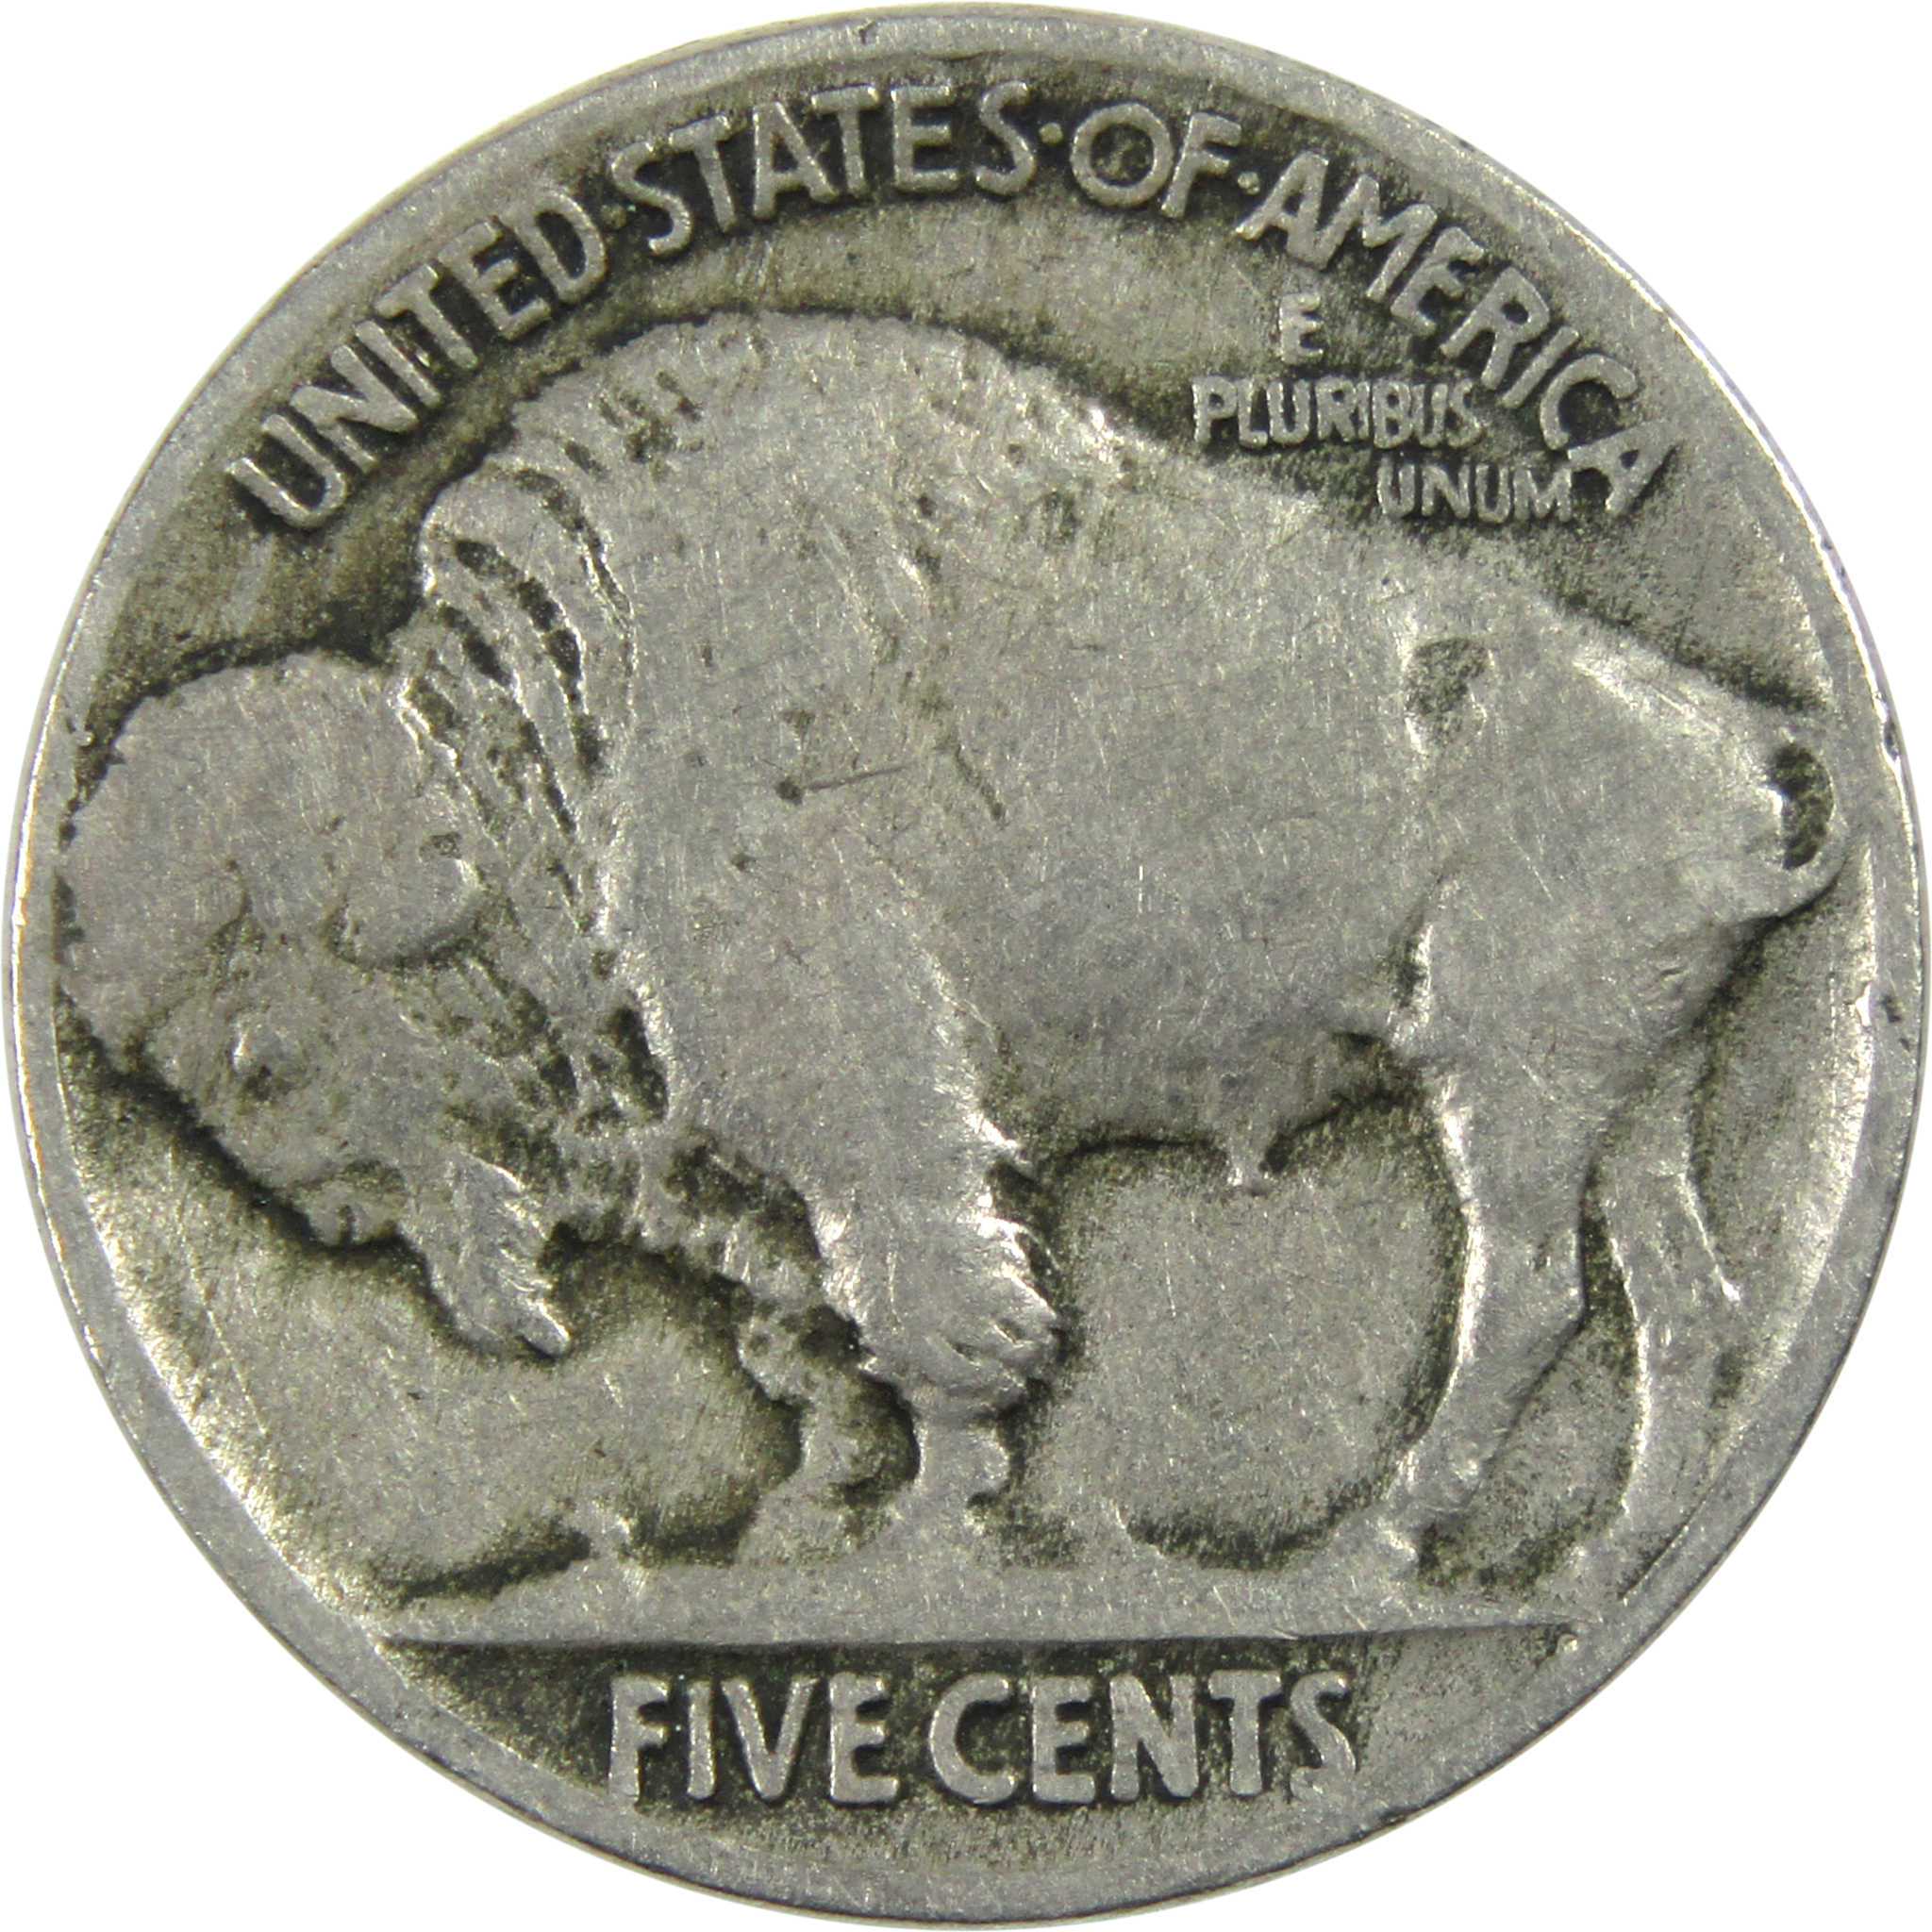 1915 Indian Head Buffalo Nickel VG Very Good 5c Coin SKU:I12978